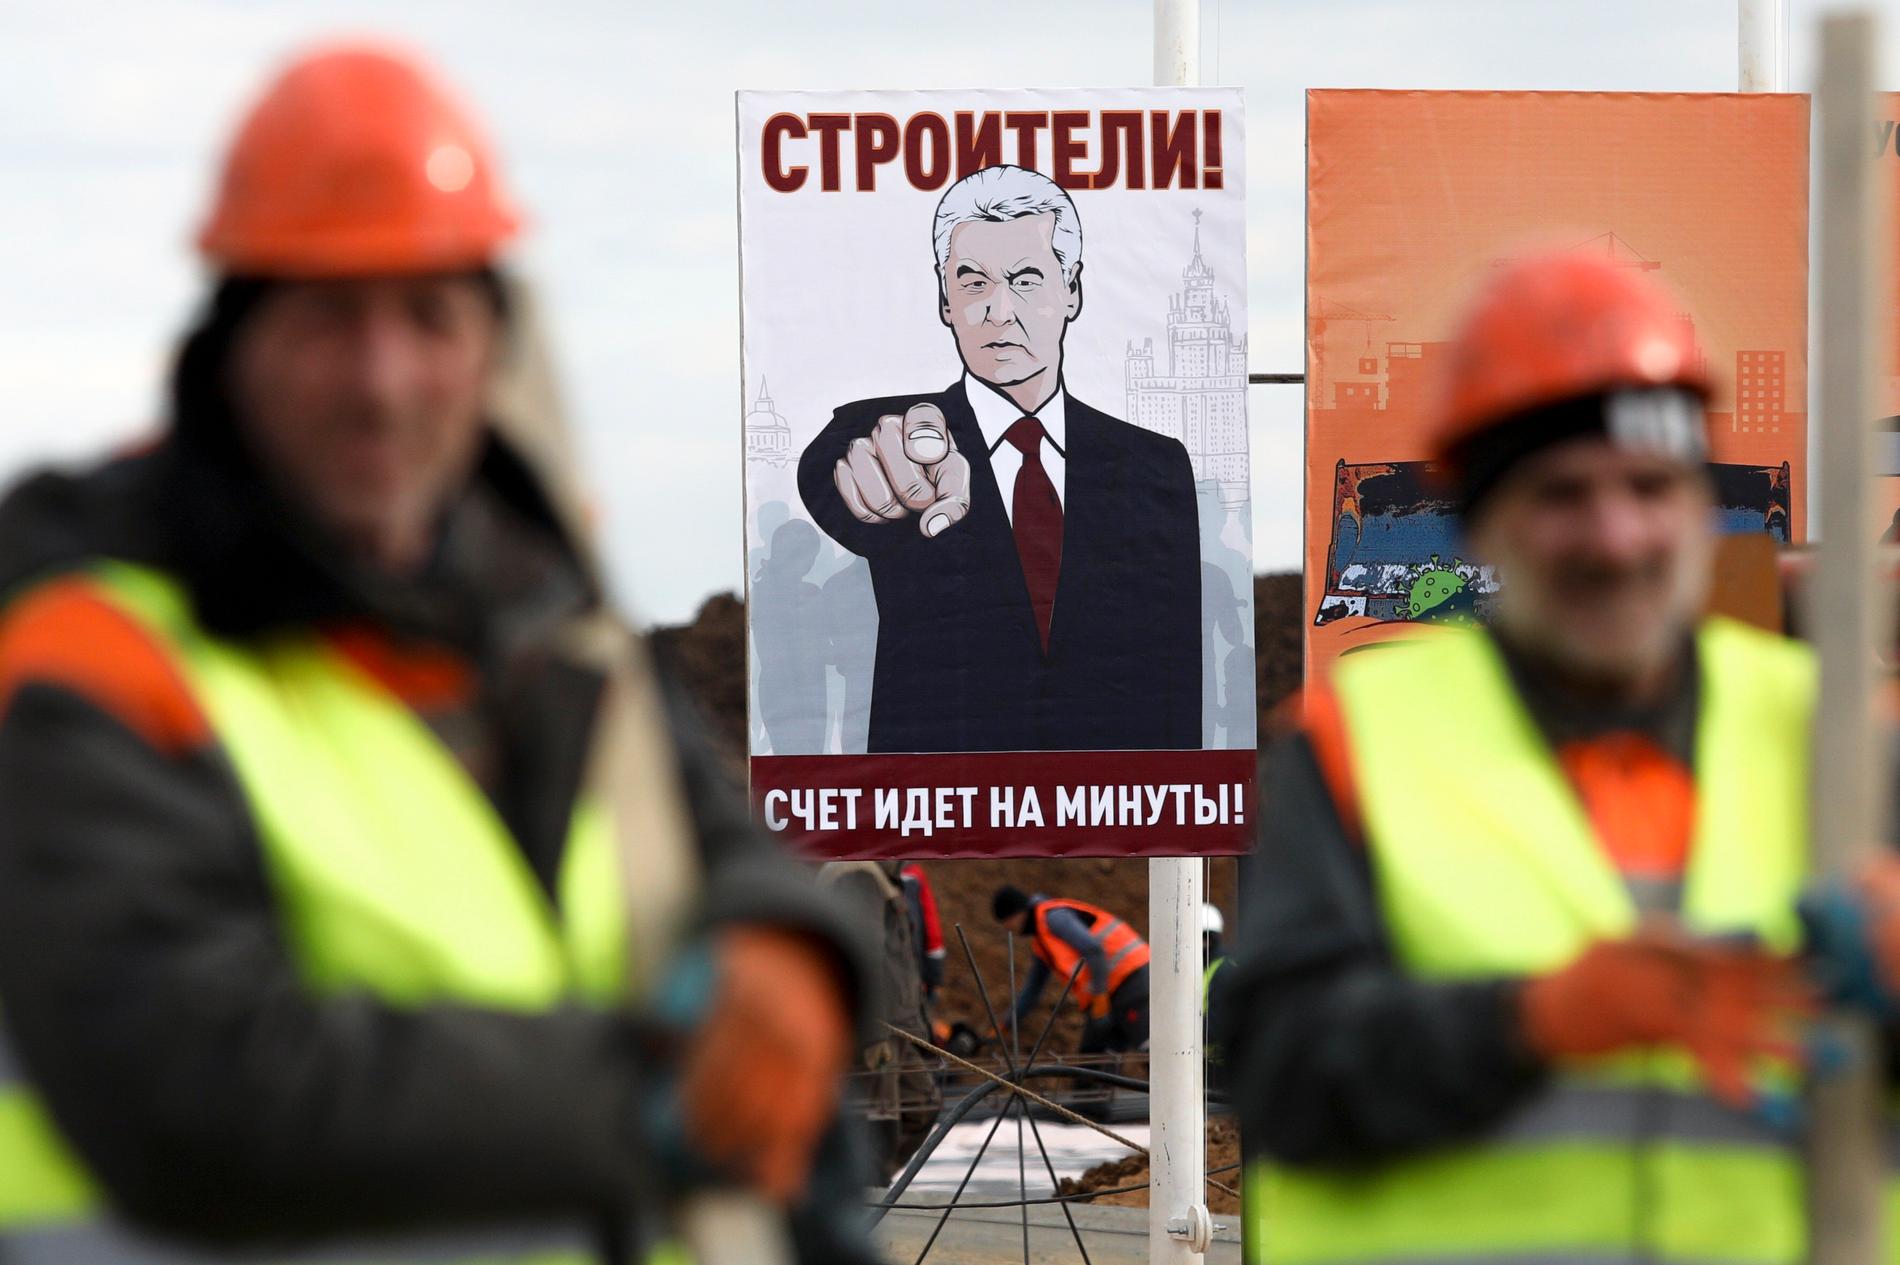 En affisch föreställande Moskvas borgmästare Sergej Sobjanin, med en uppmaning till byggnadsarbetare att jobba hårt för att färdigställa ett nytt sjukhus utanför Moskva som ska ta emot coronapatienter.